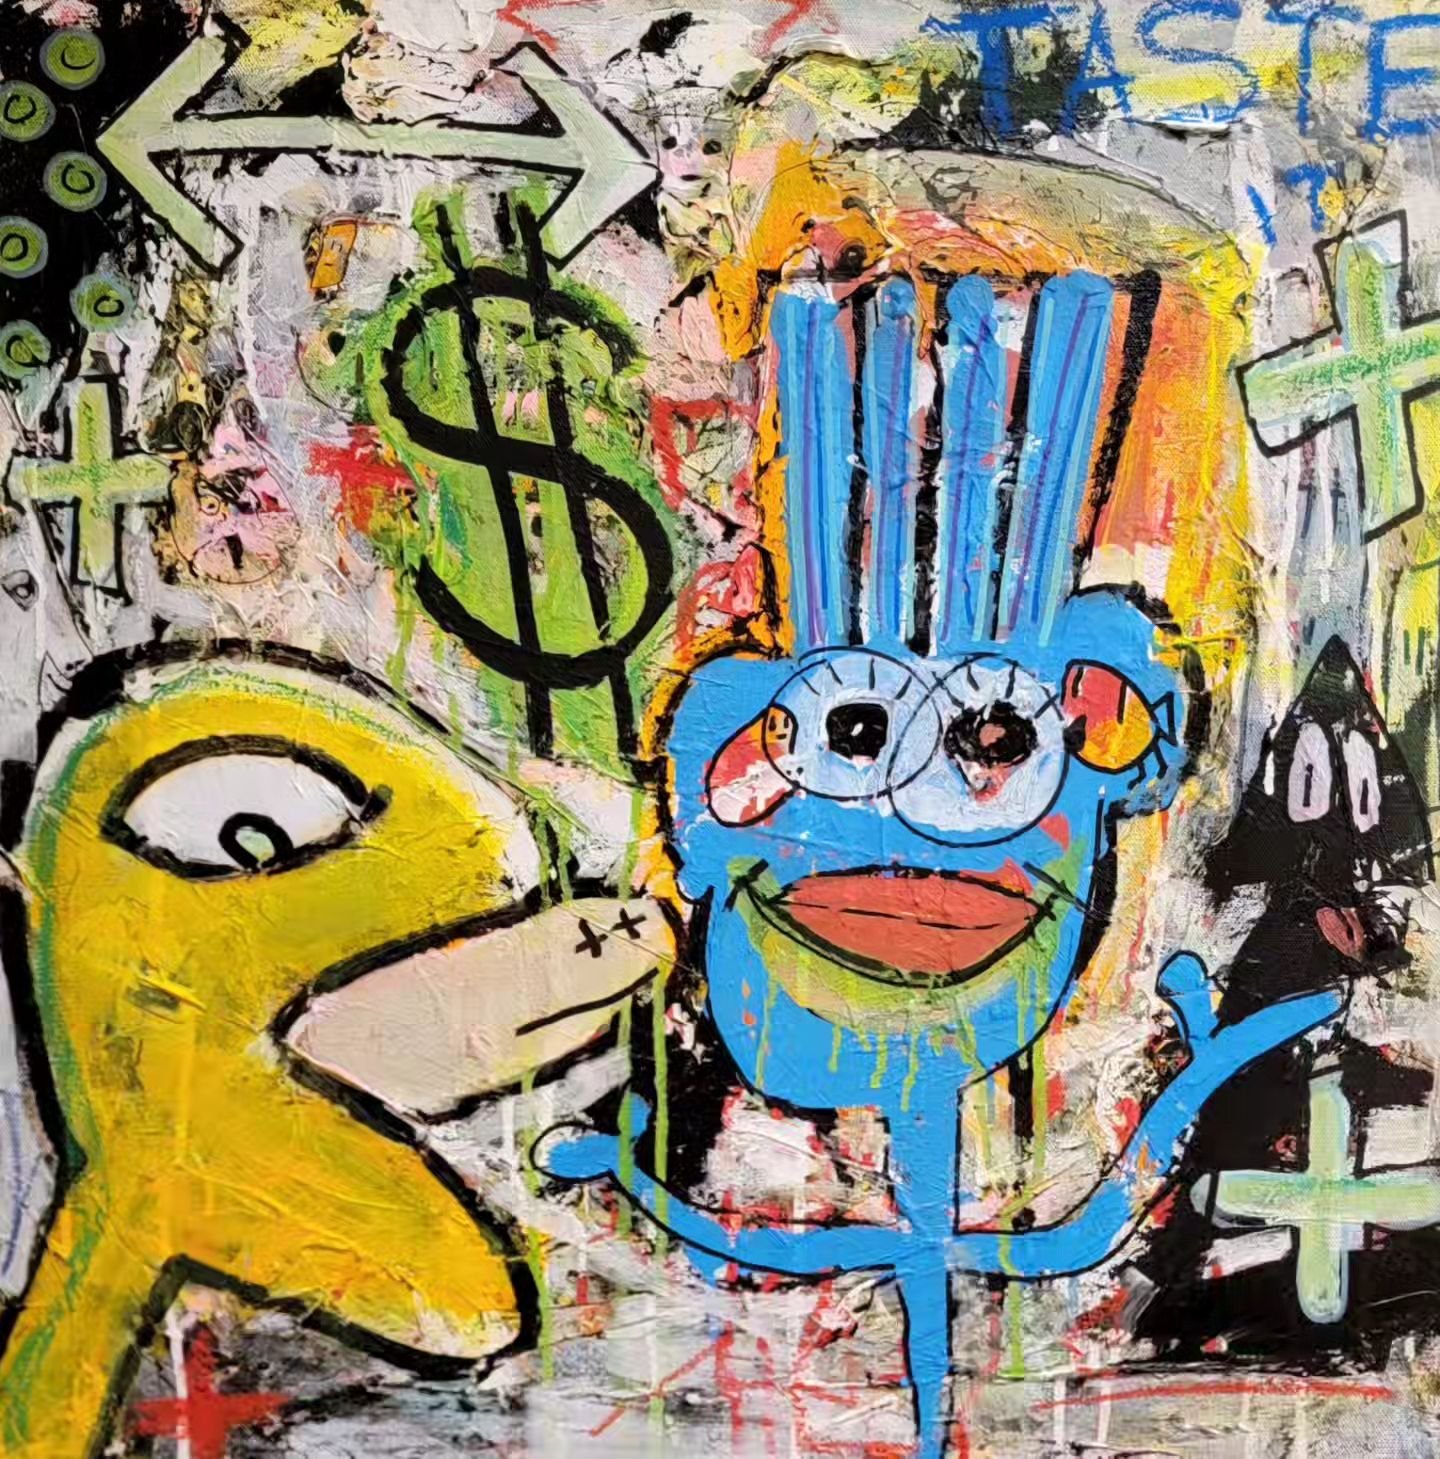 #TasteIt 
24x24
 
mixed media on canvas.

#art #artistsoninstagram #streetart #acryliconcanvas #jasonpikenart #abstract #abstractartist #money #nyc #drip